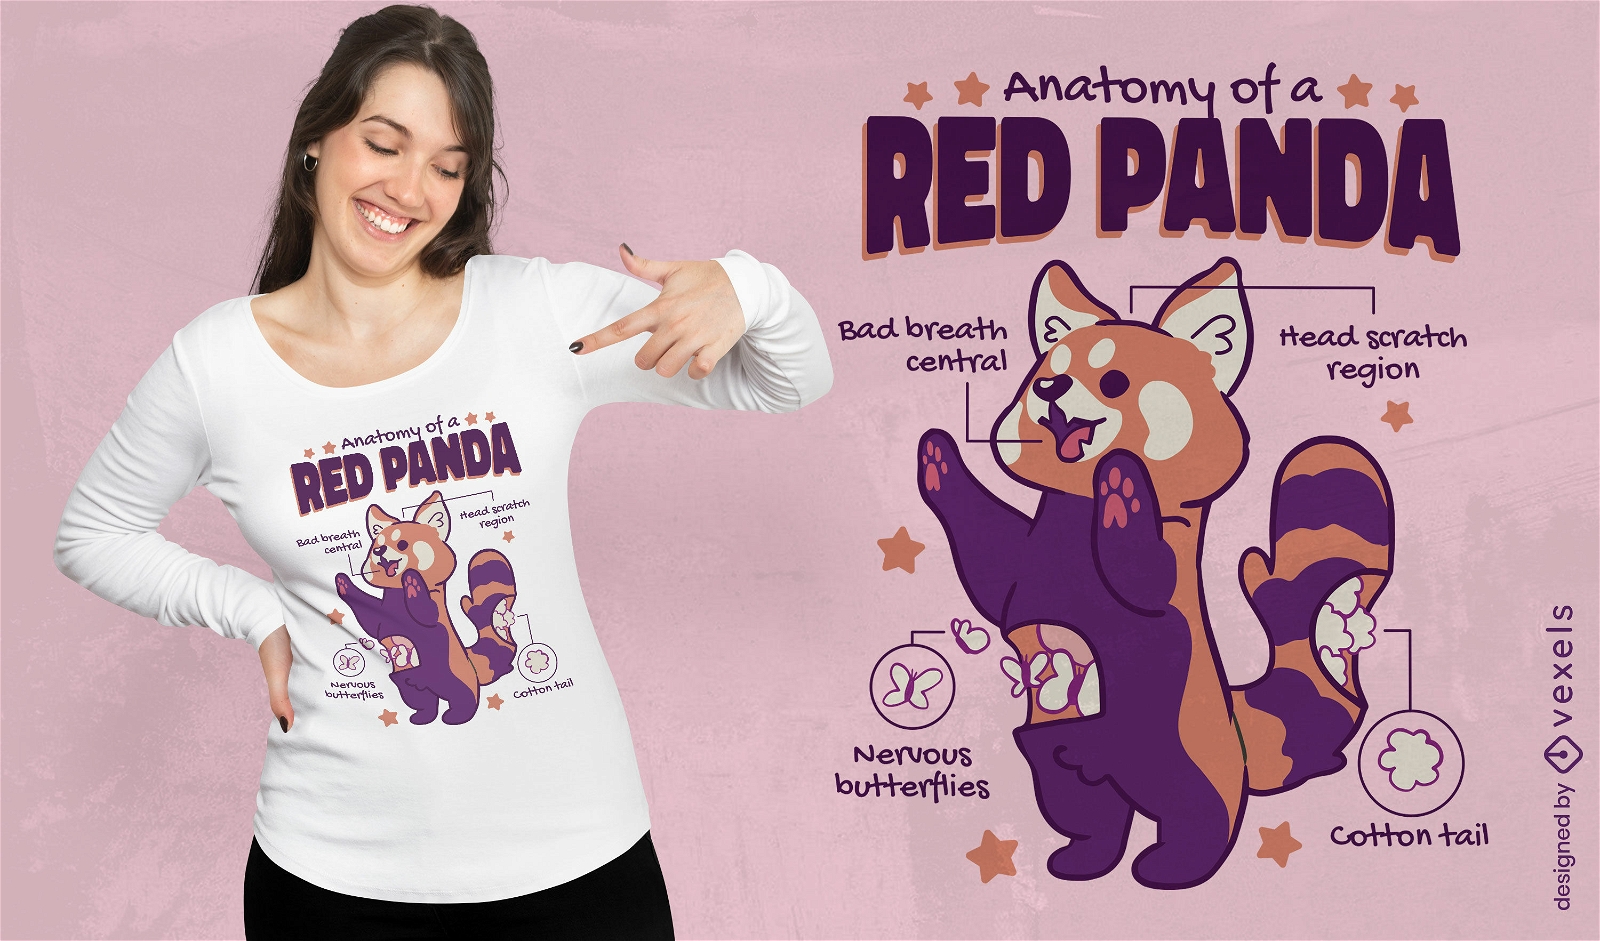 Red panda anatomy t-shirt design